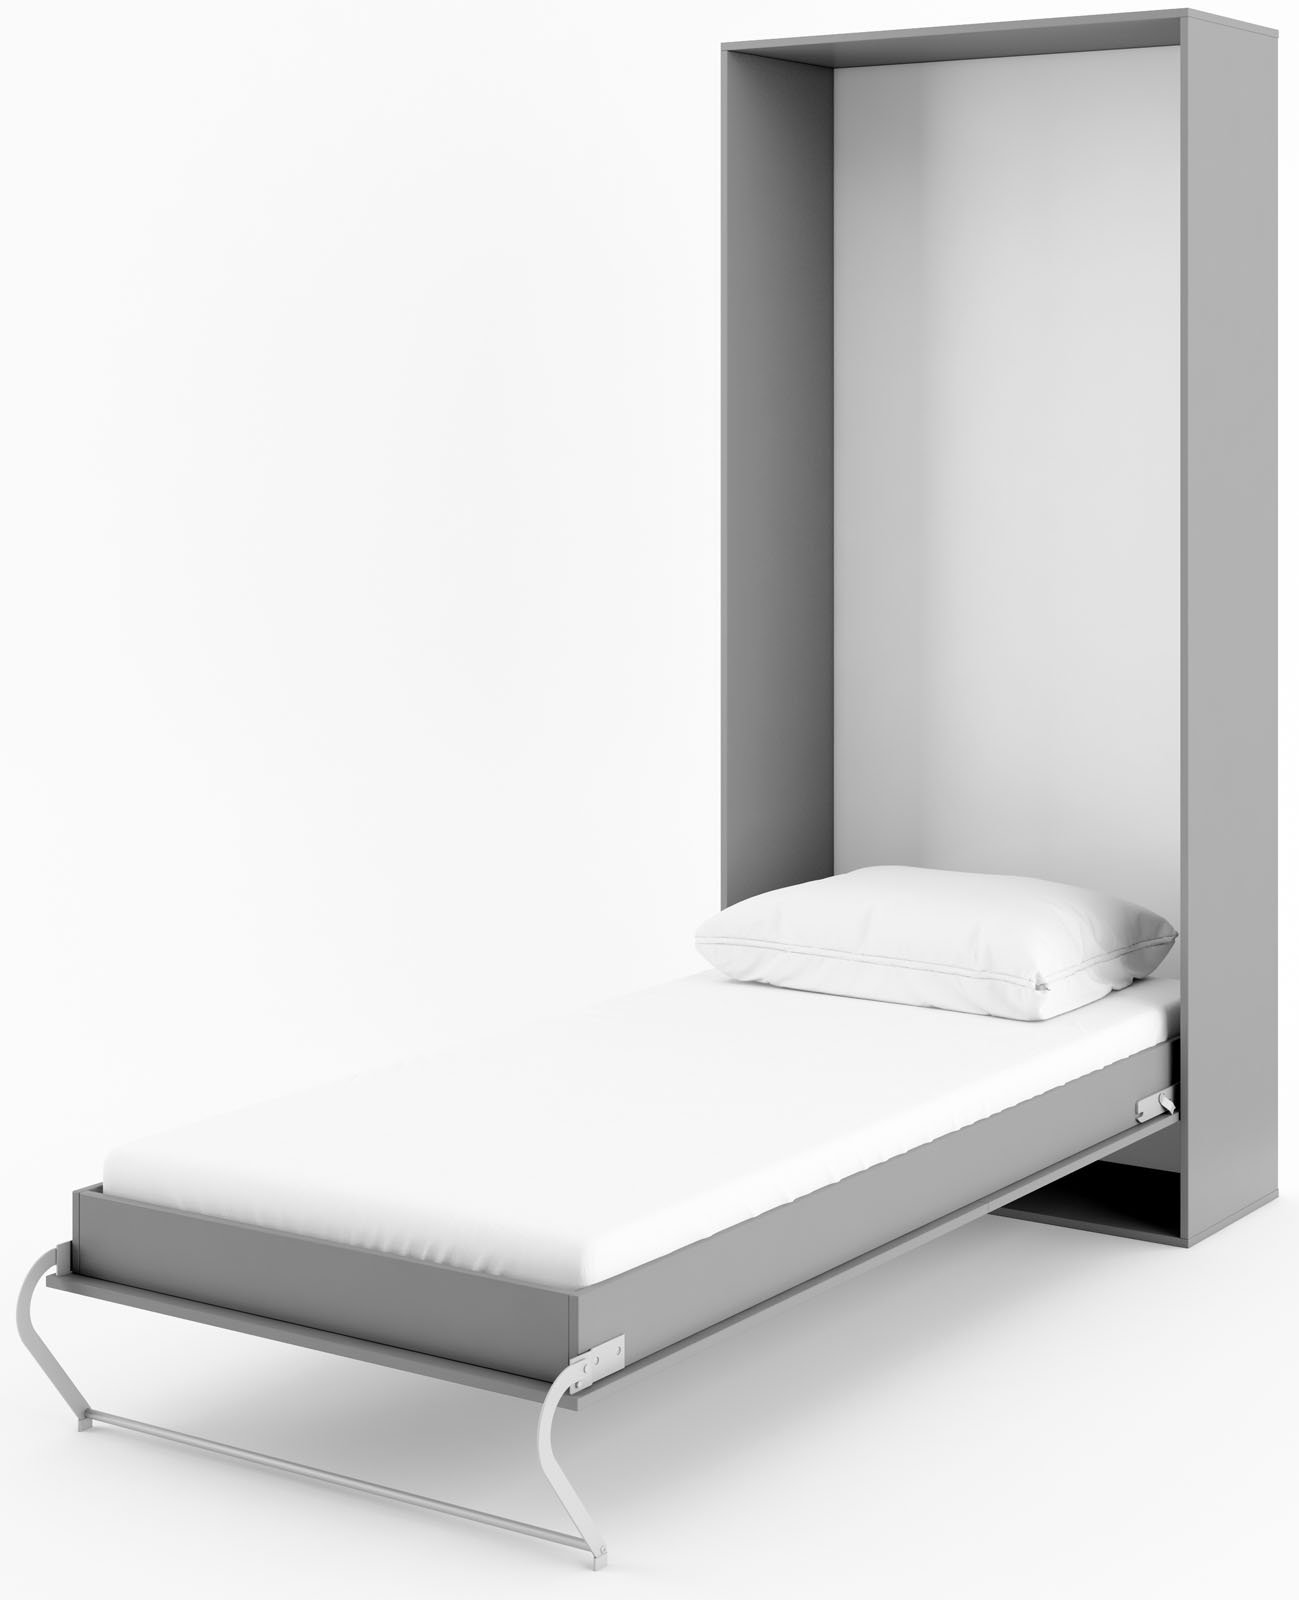 Шкаф кровать вертикальная. Вертикальная кровать икеа. Кровать откидная вертикальная. Кровать трансформер односпальная. Шкаф кровать односпальная.